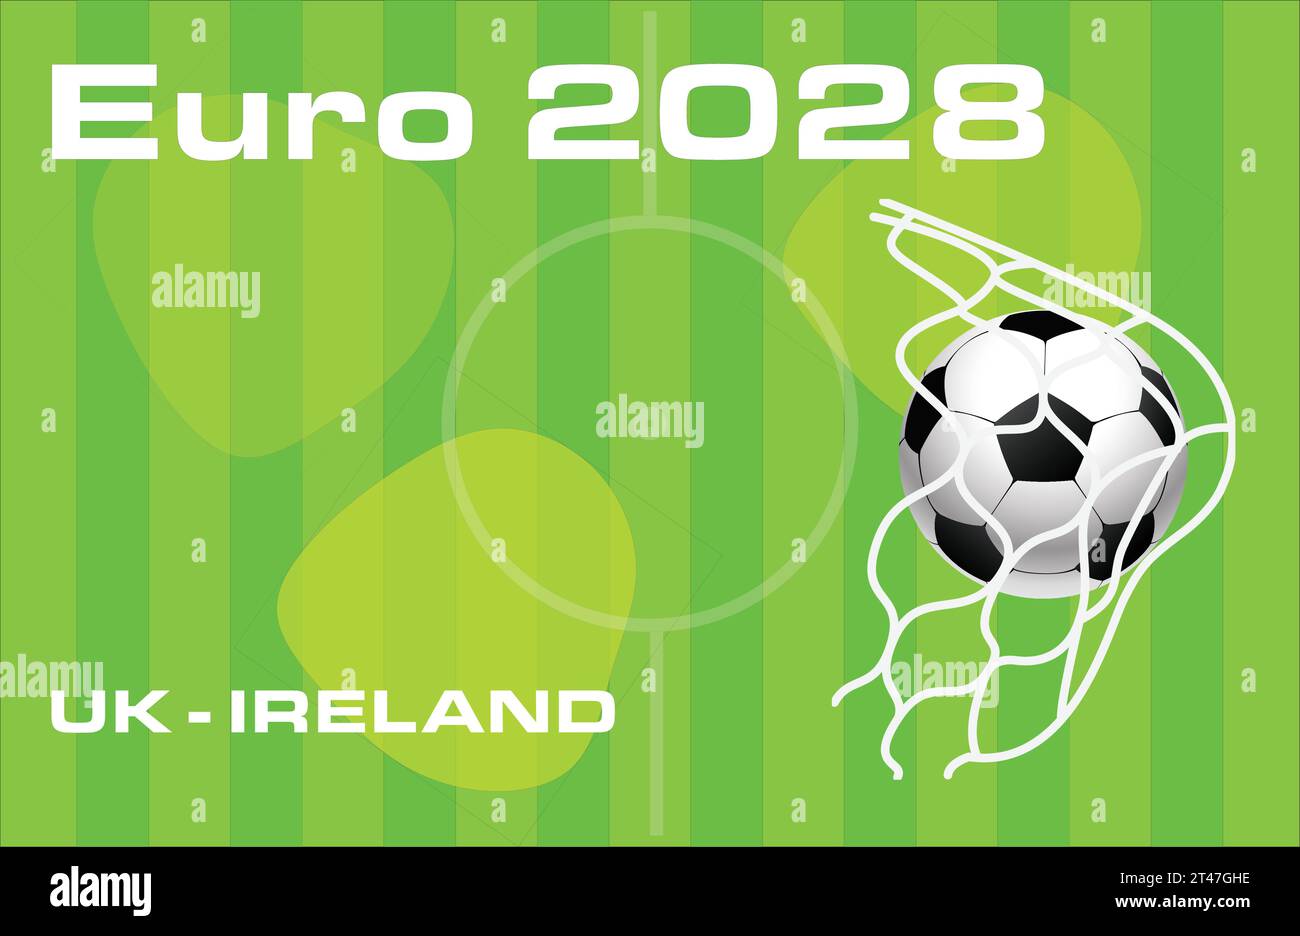 Campionato europeo di calcio Euro 2028 nel Regno Unito e in Irlanda - illustrazione vettoriale. Illustrazione Vettoriale